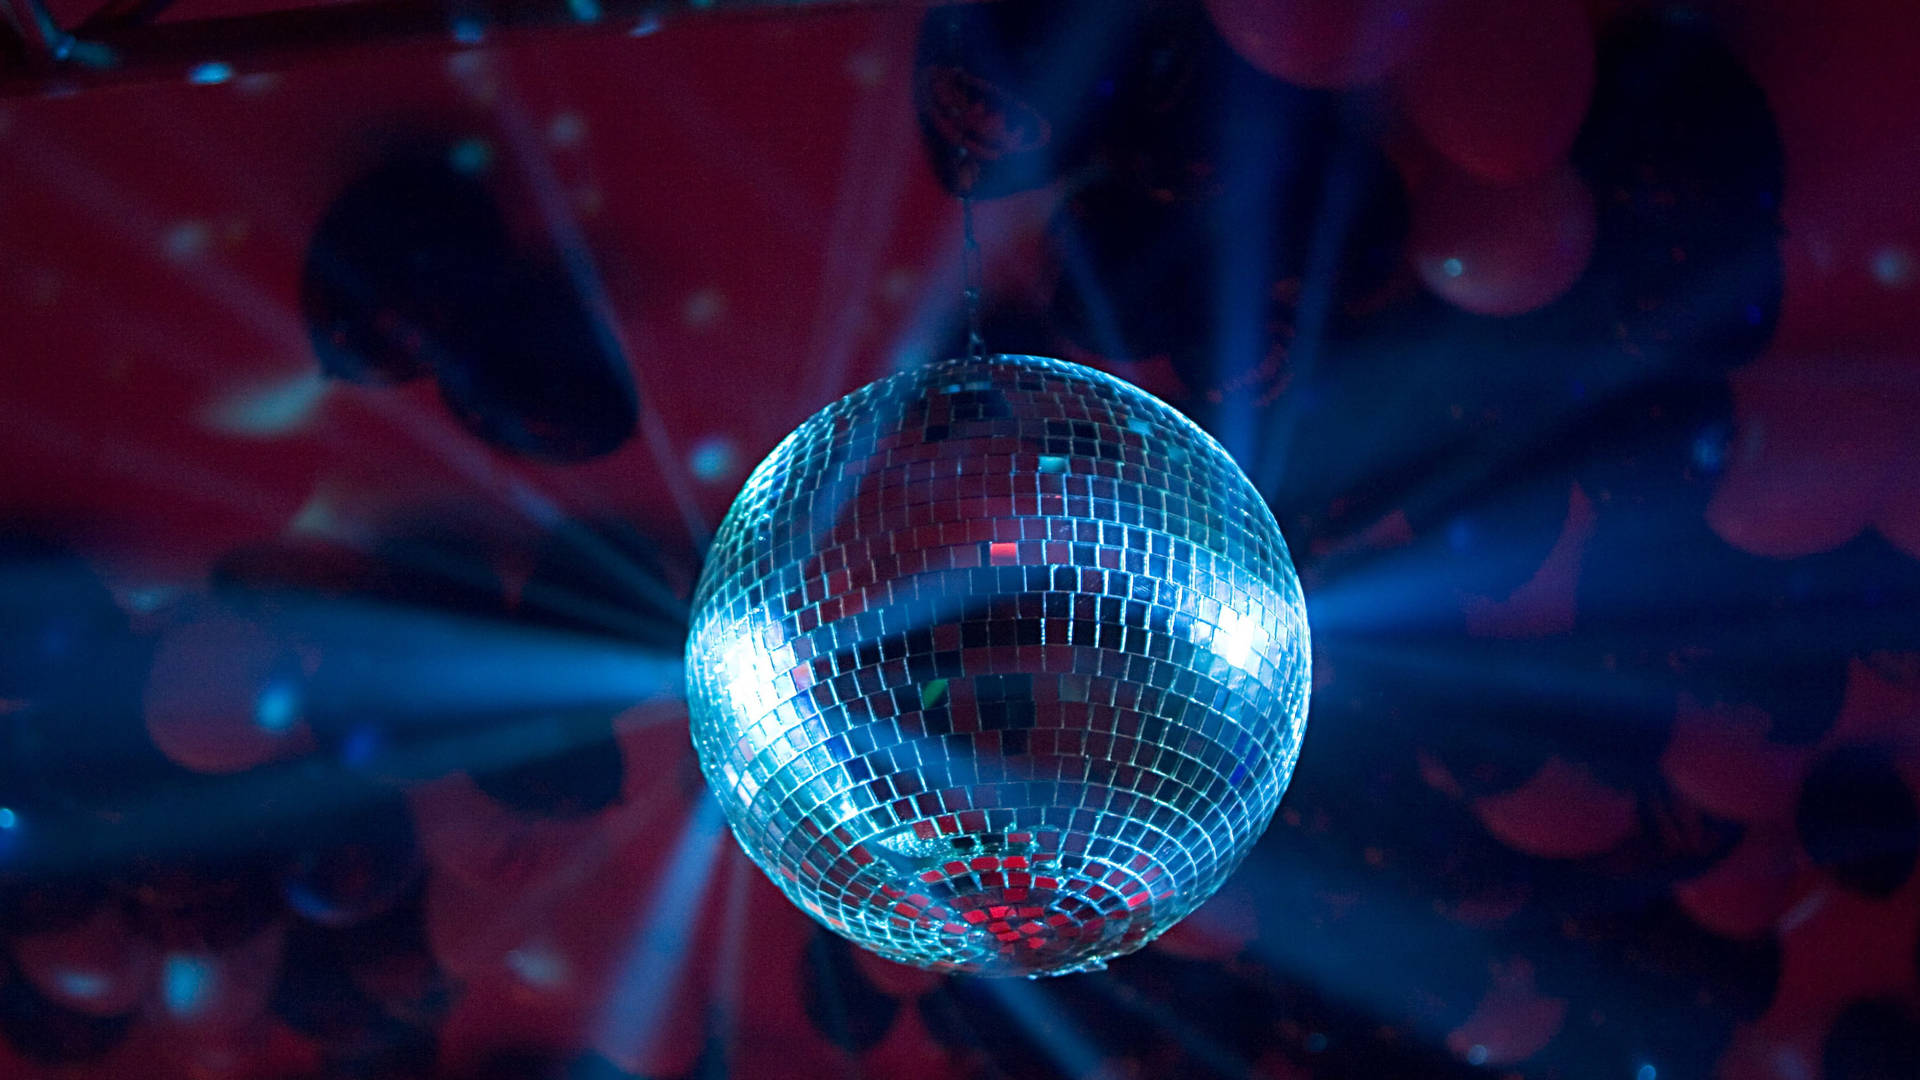 Sølv Discokugle Reflekser: Opret et dansende rum med de sølvblinkende reflekser fra en discokugle. Wallpaper